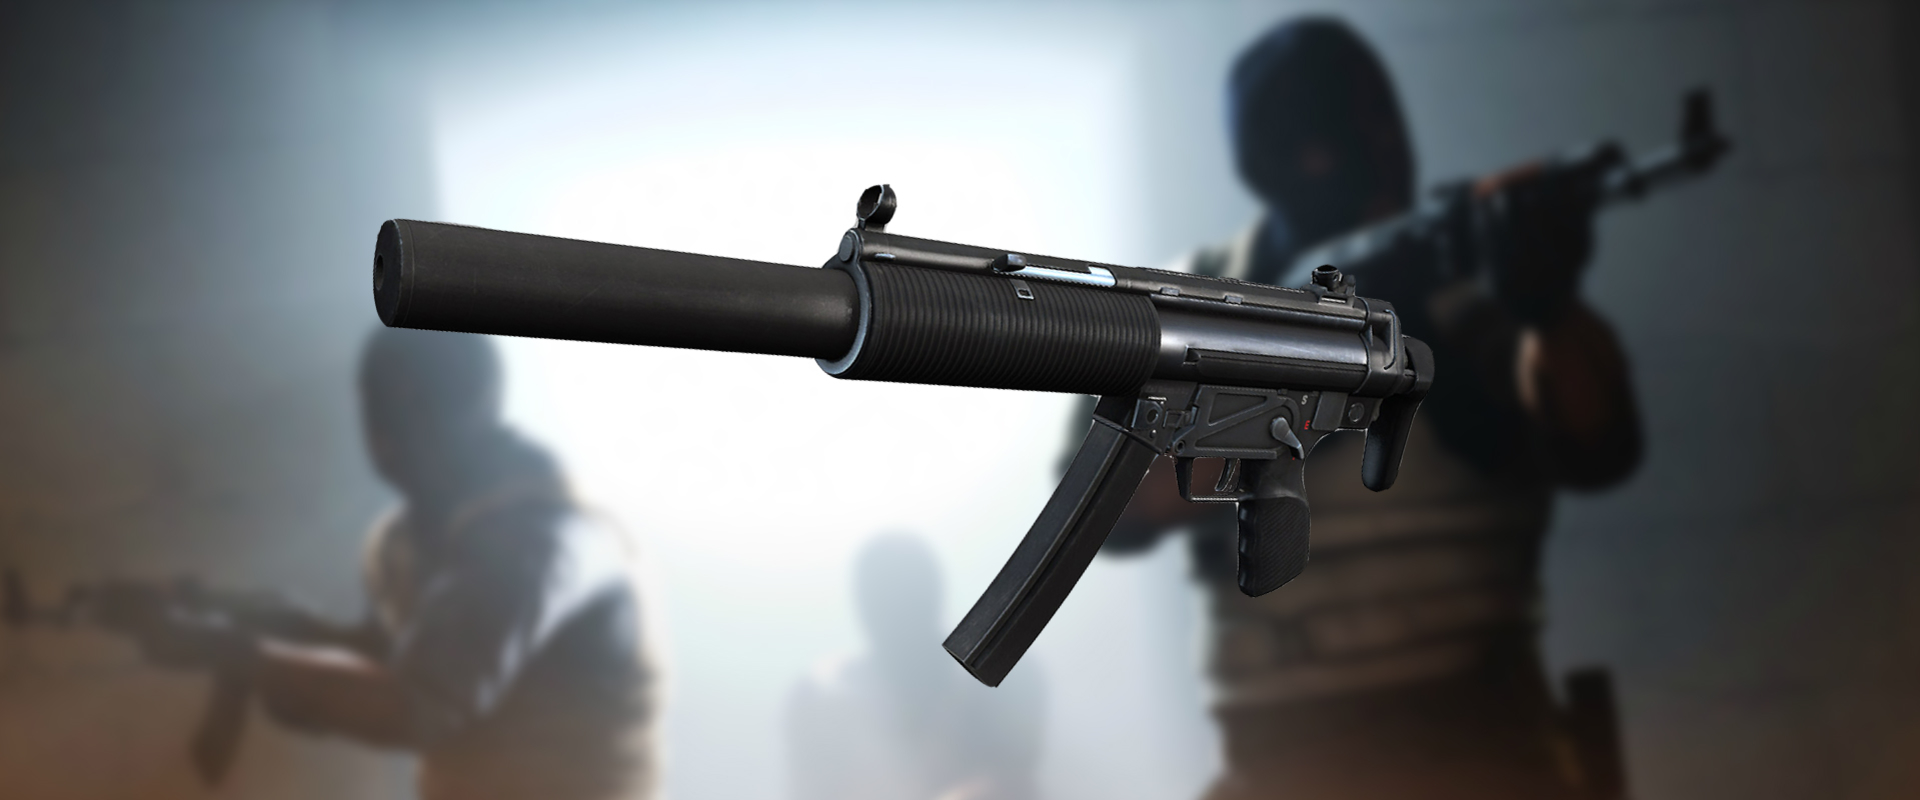 Megjelent a CSGO legújabb fegyvere; íme az MP5-SD!